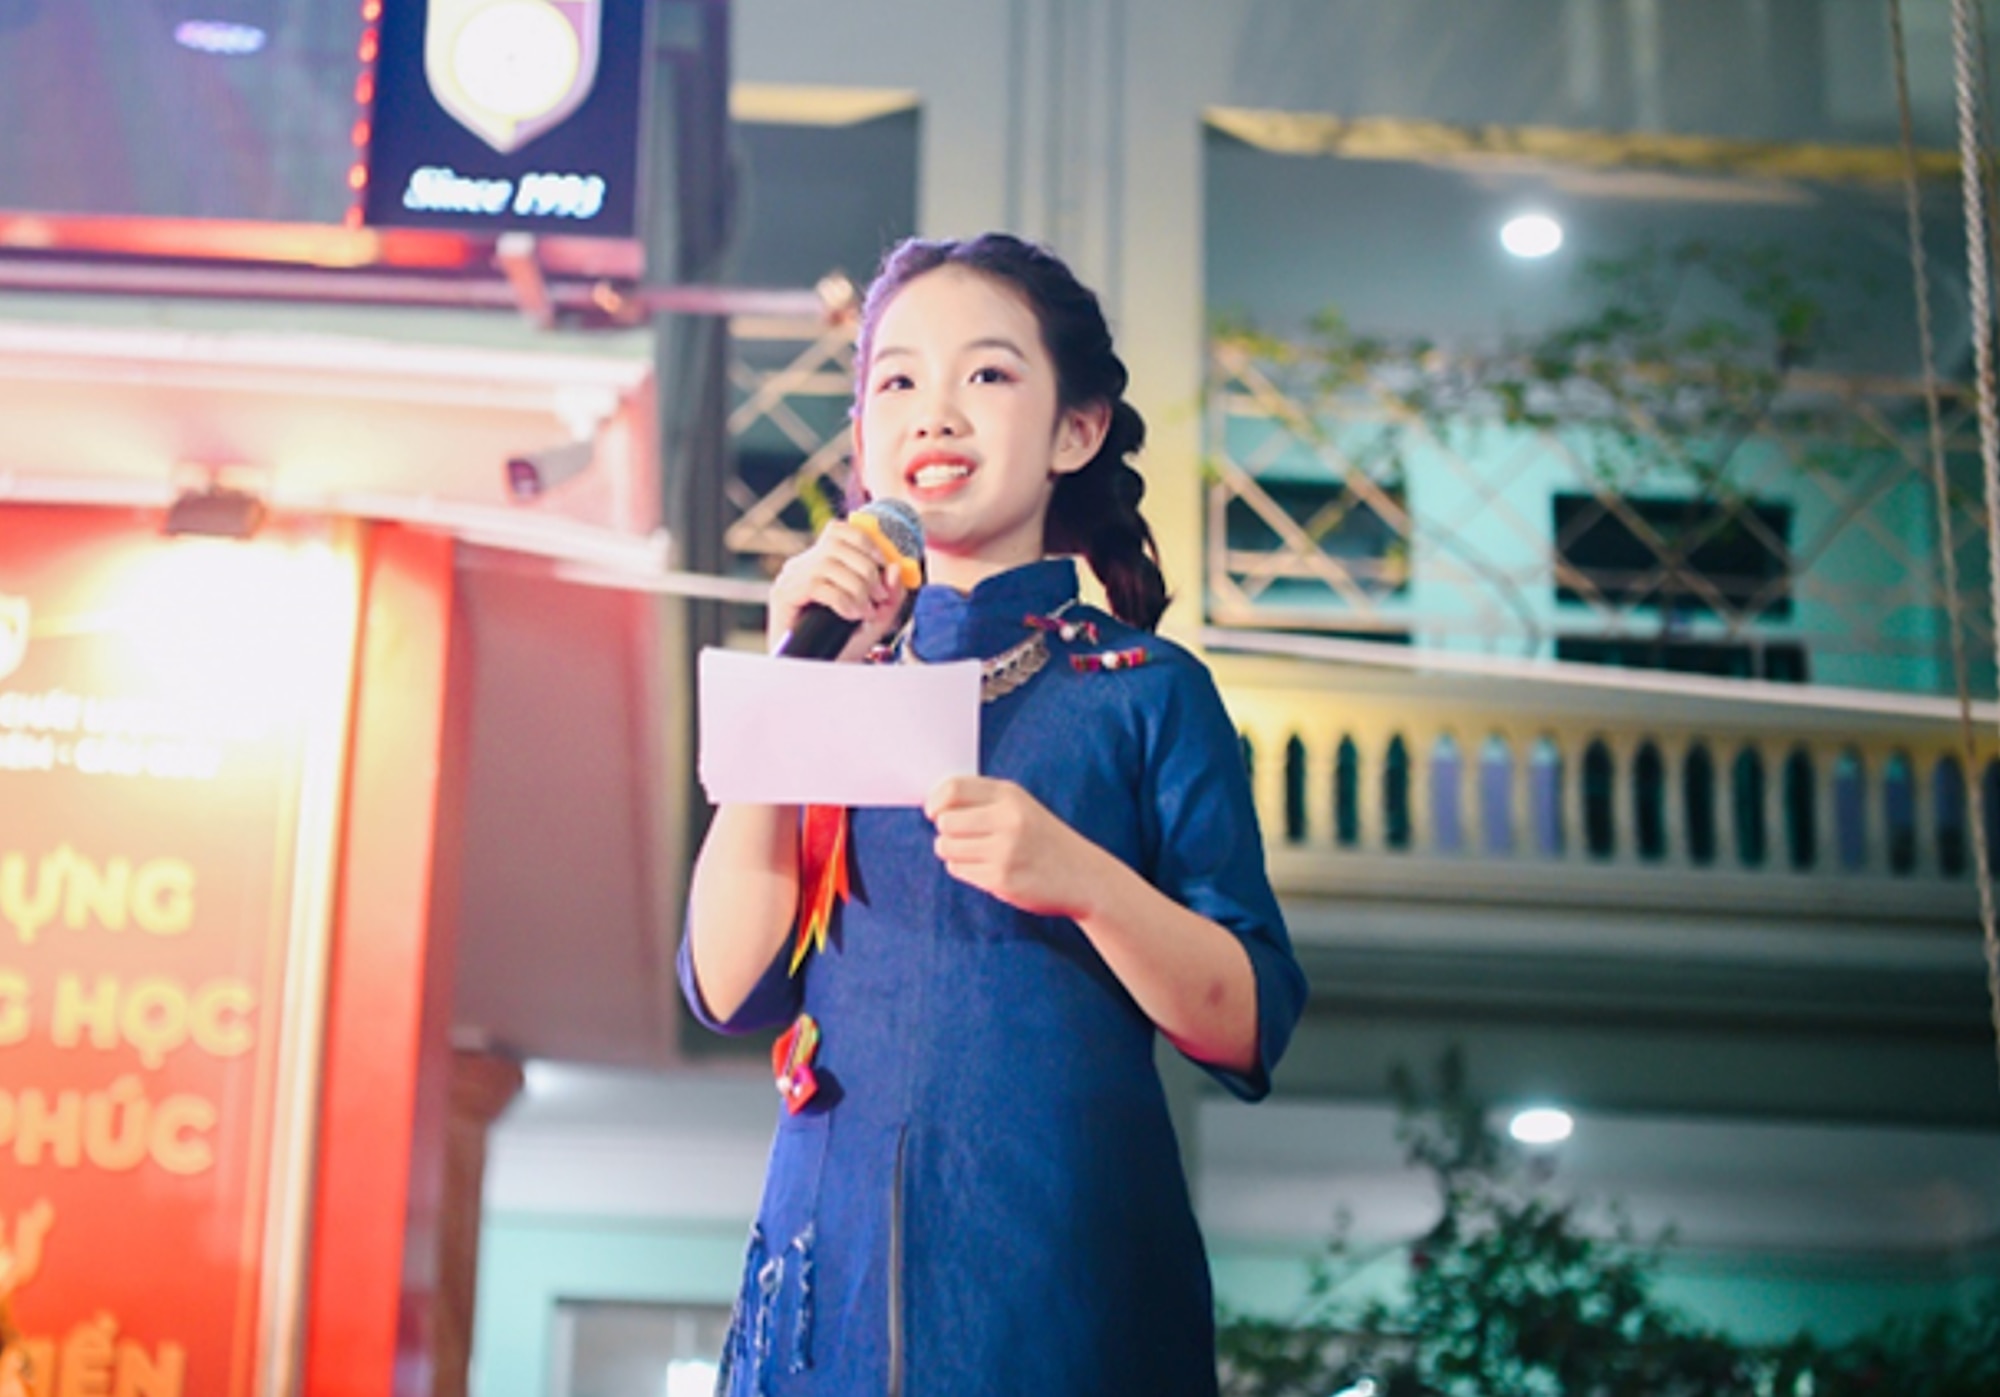 Tại Đại hội học sinh giỏi khối THCS của trường THCS và THPT Nguyễn Bỉnh Khiêm (Cầu Giấy, Hà Nội) diễn ra mới đây, Dương Tuệ Mẫn, học sinh lớp 6D0 khiến mọi người ngạc nhiên về tài năng thời trang.